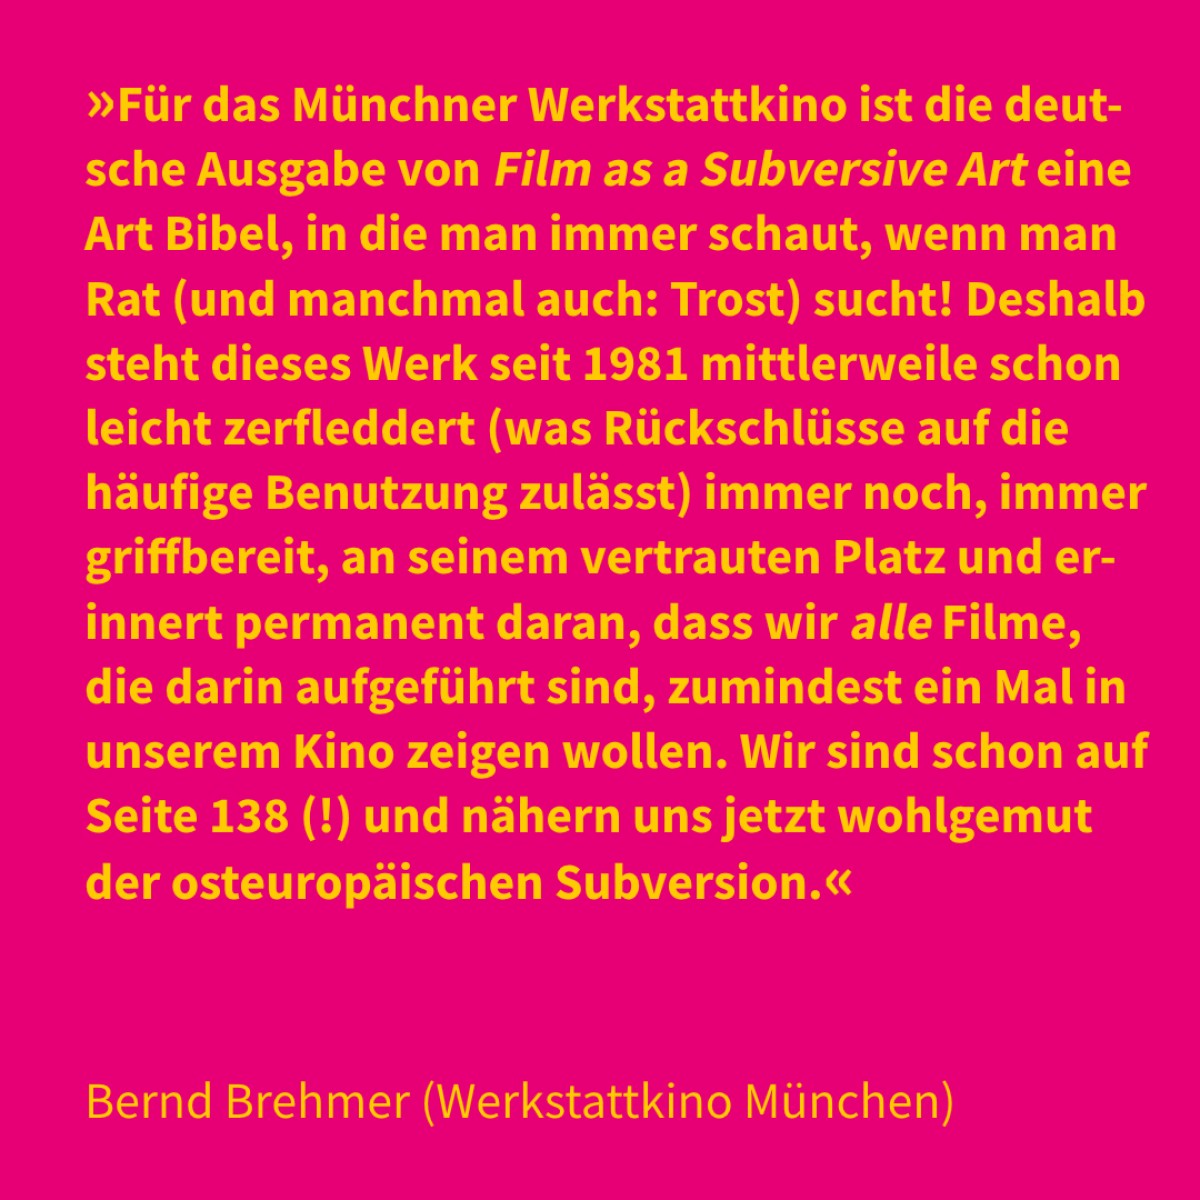 Bernd Brehmer (Werkstattkino München)